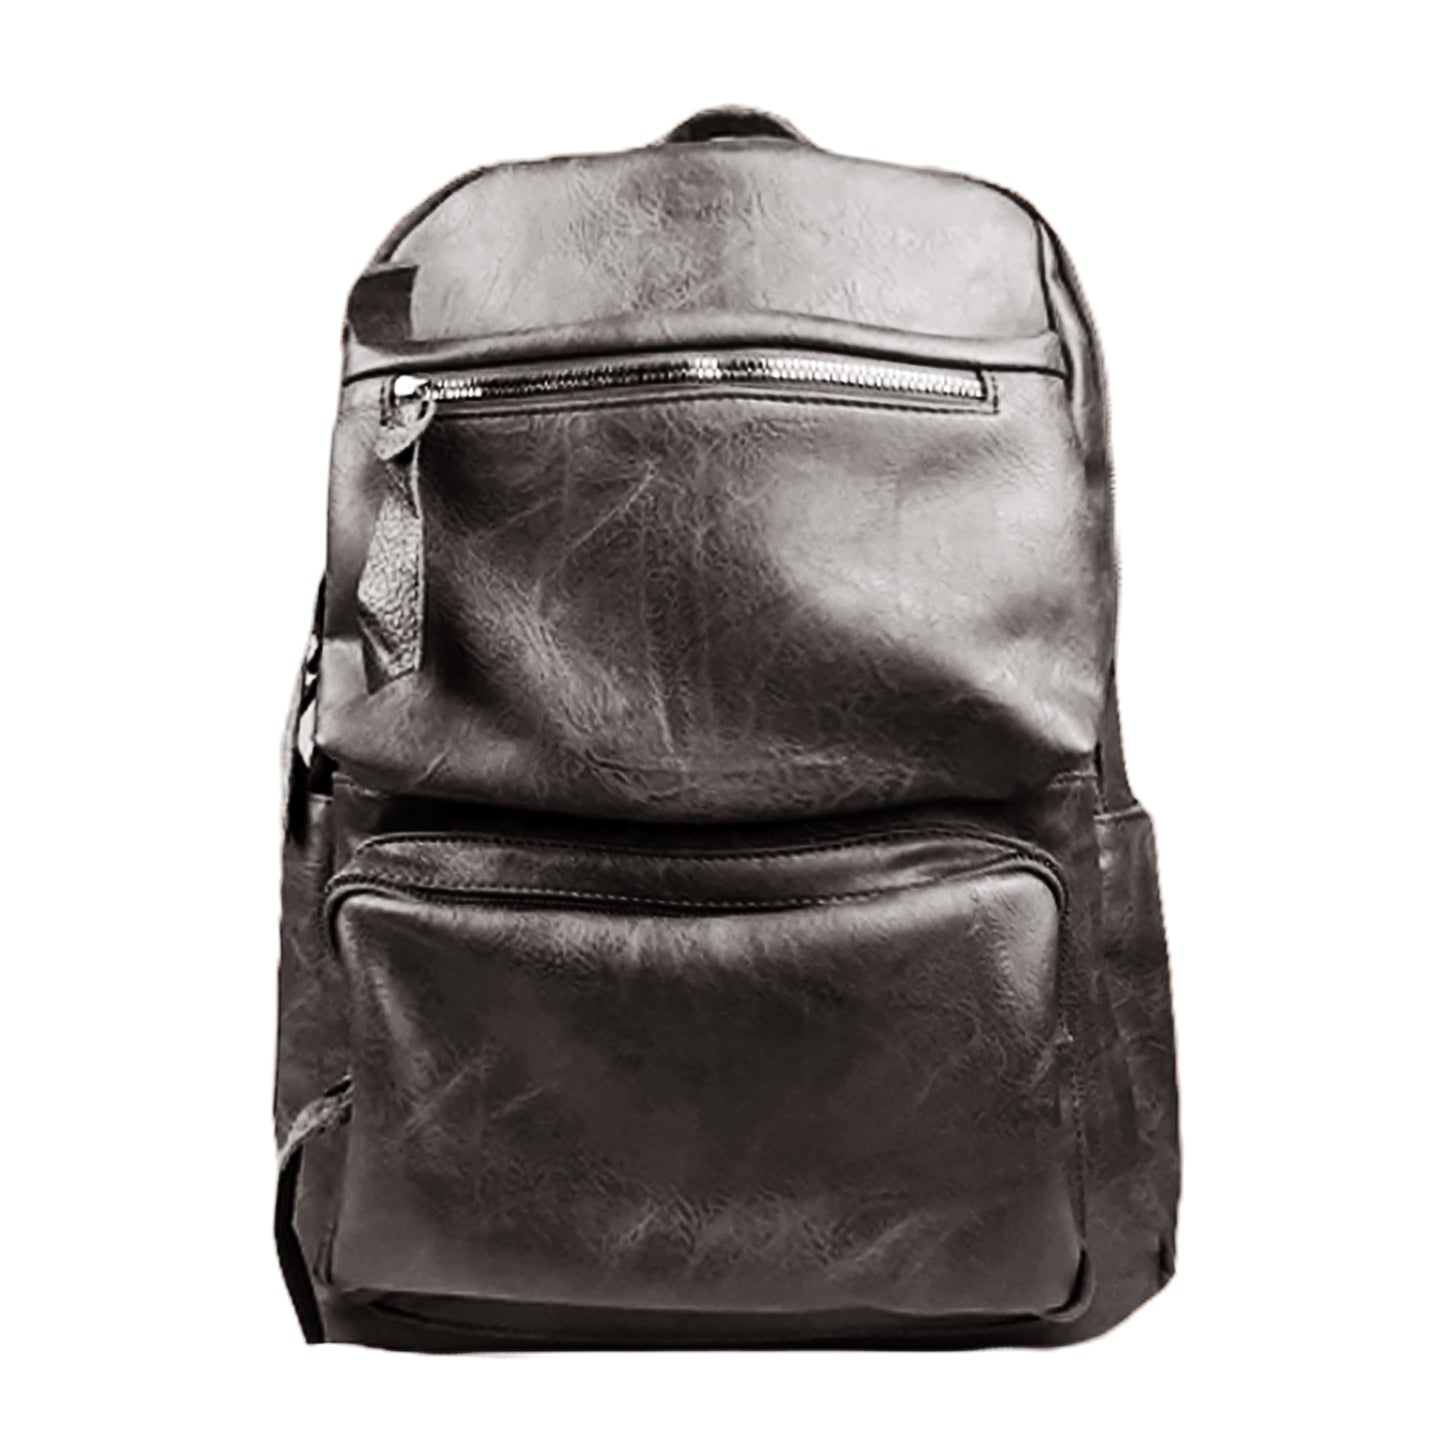 Backpack Black 0501023 BLACK